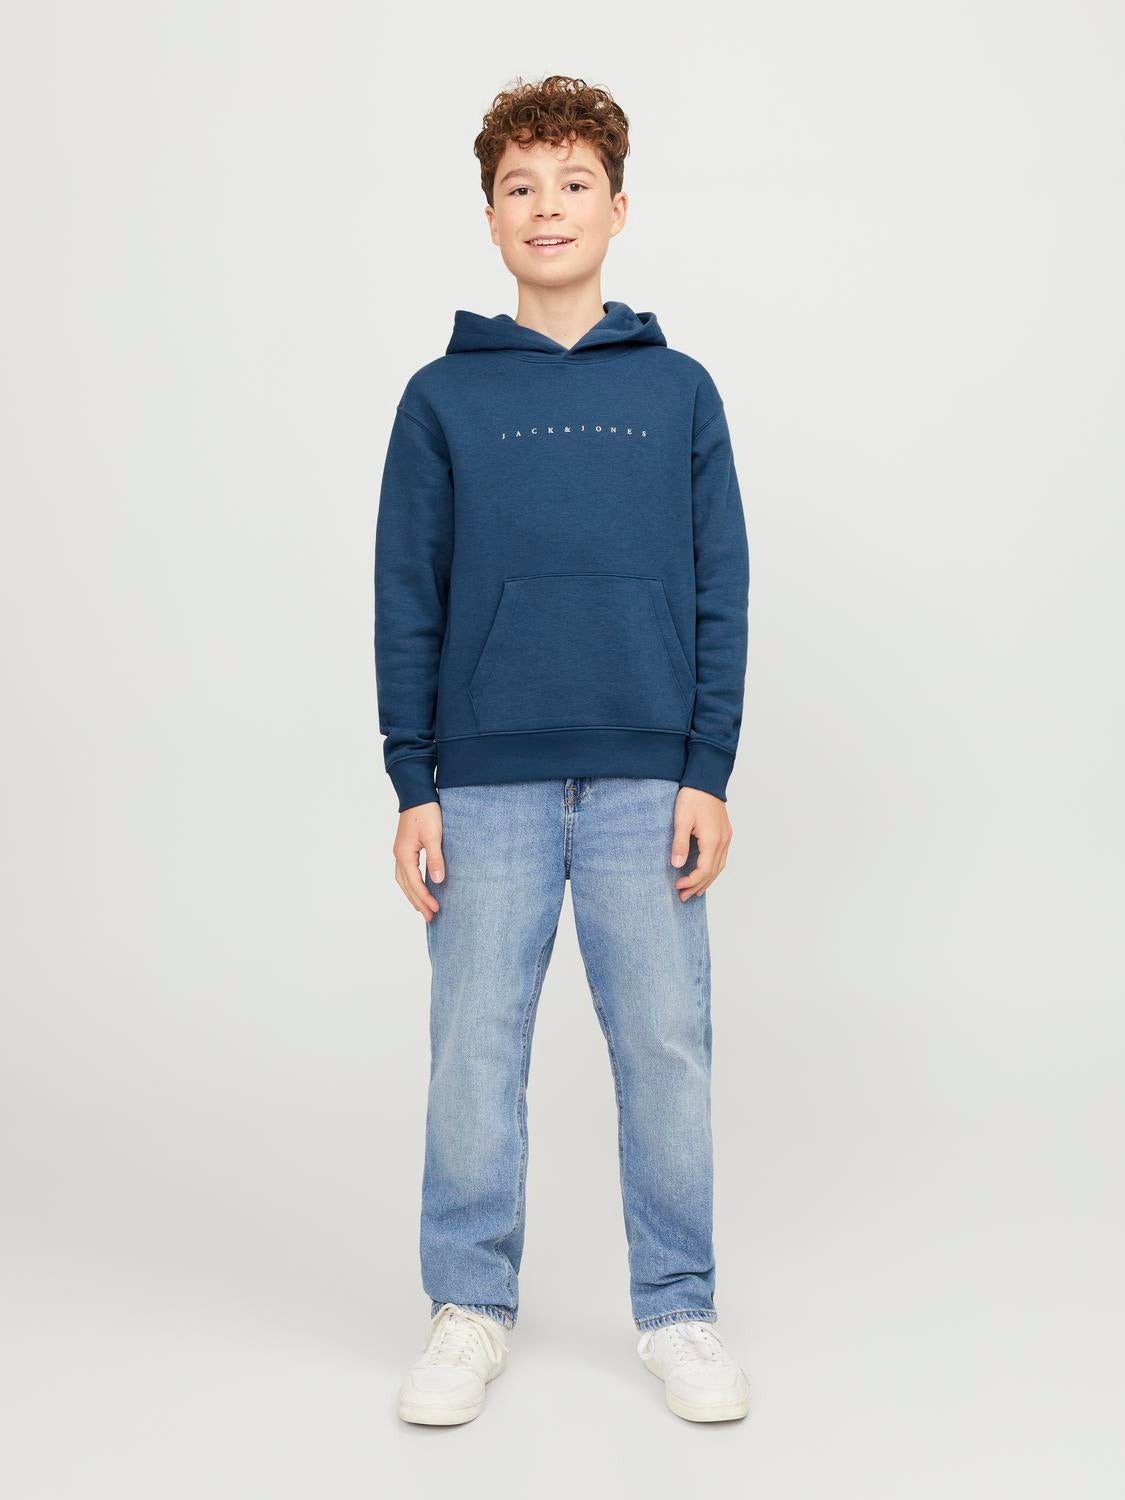 Relaxed Fit Hoodie Junior Set in sleeves Sweatshirt